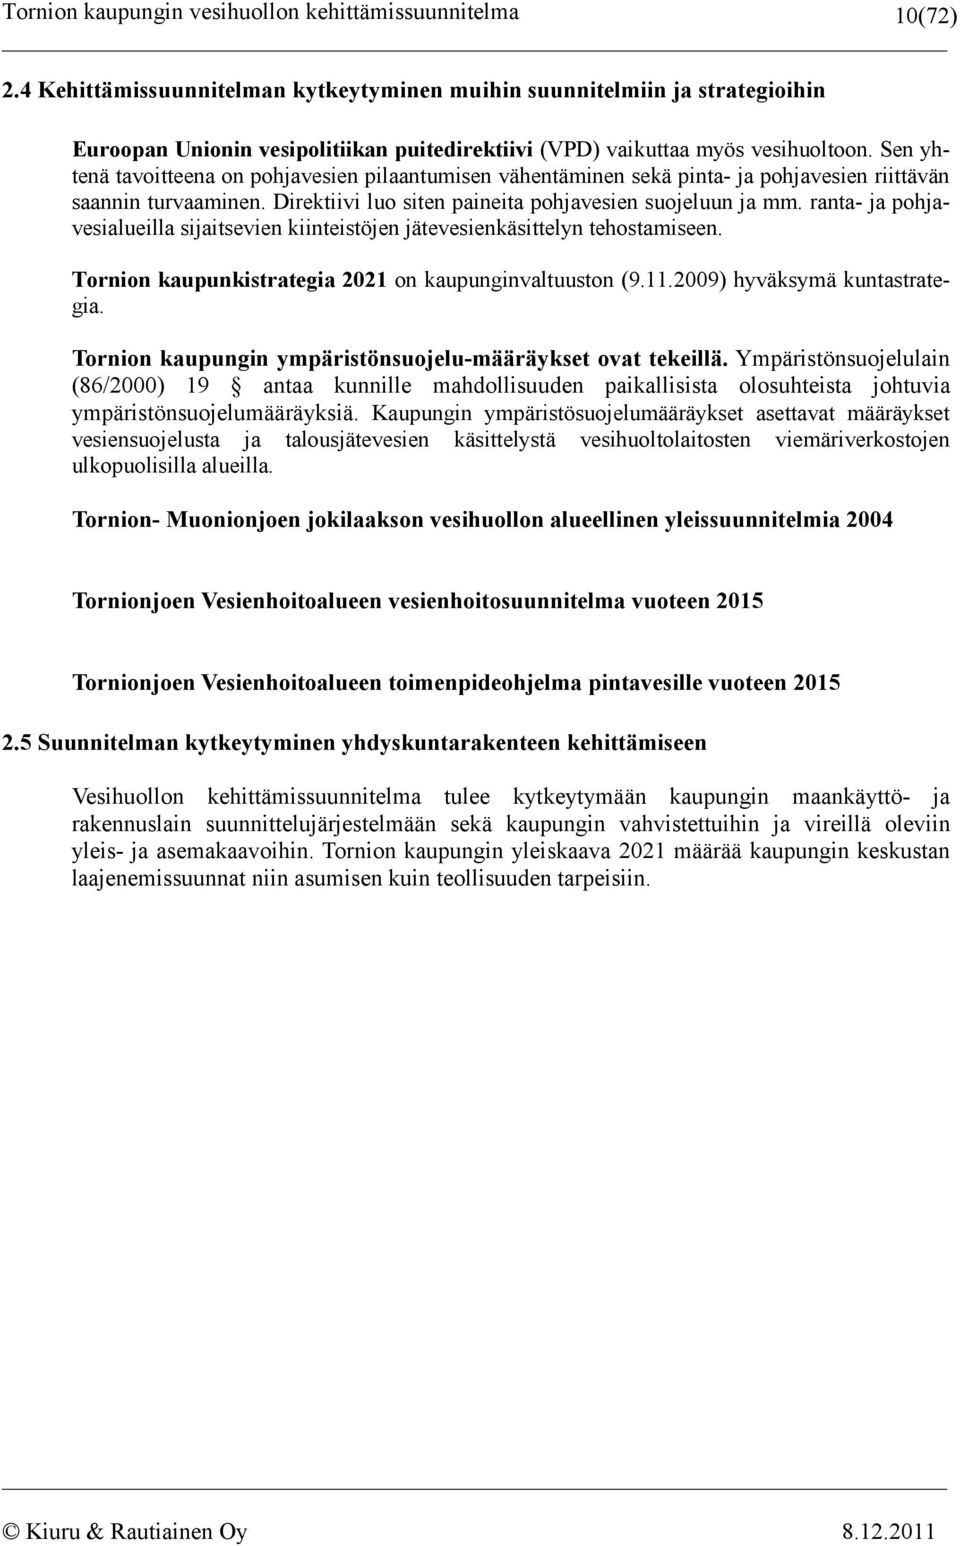 ranta- ja pohjavesialueilla sijaitsevien kiinteistöjen jätevesienkäsittelyn tehostamiseen. Tornion kaupunkistrategia 2021 on kaupunginvaltuuston (9.11.2009) hyväksymä kuntastrategia.